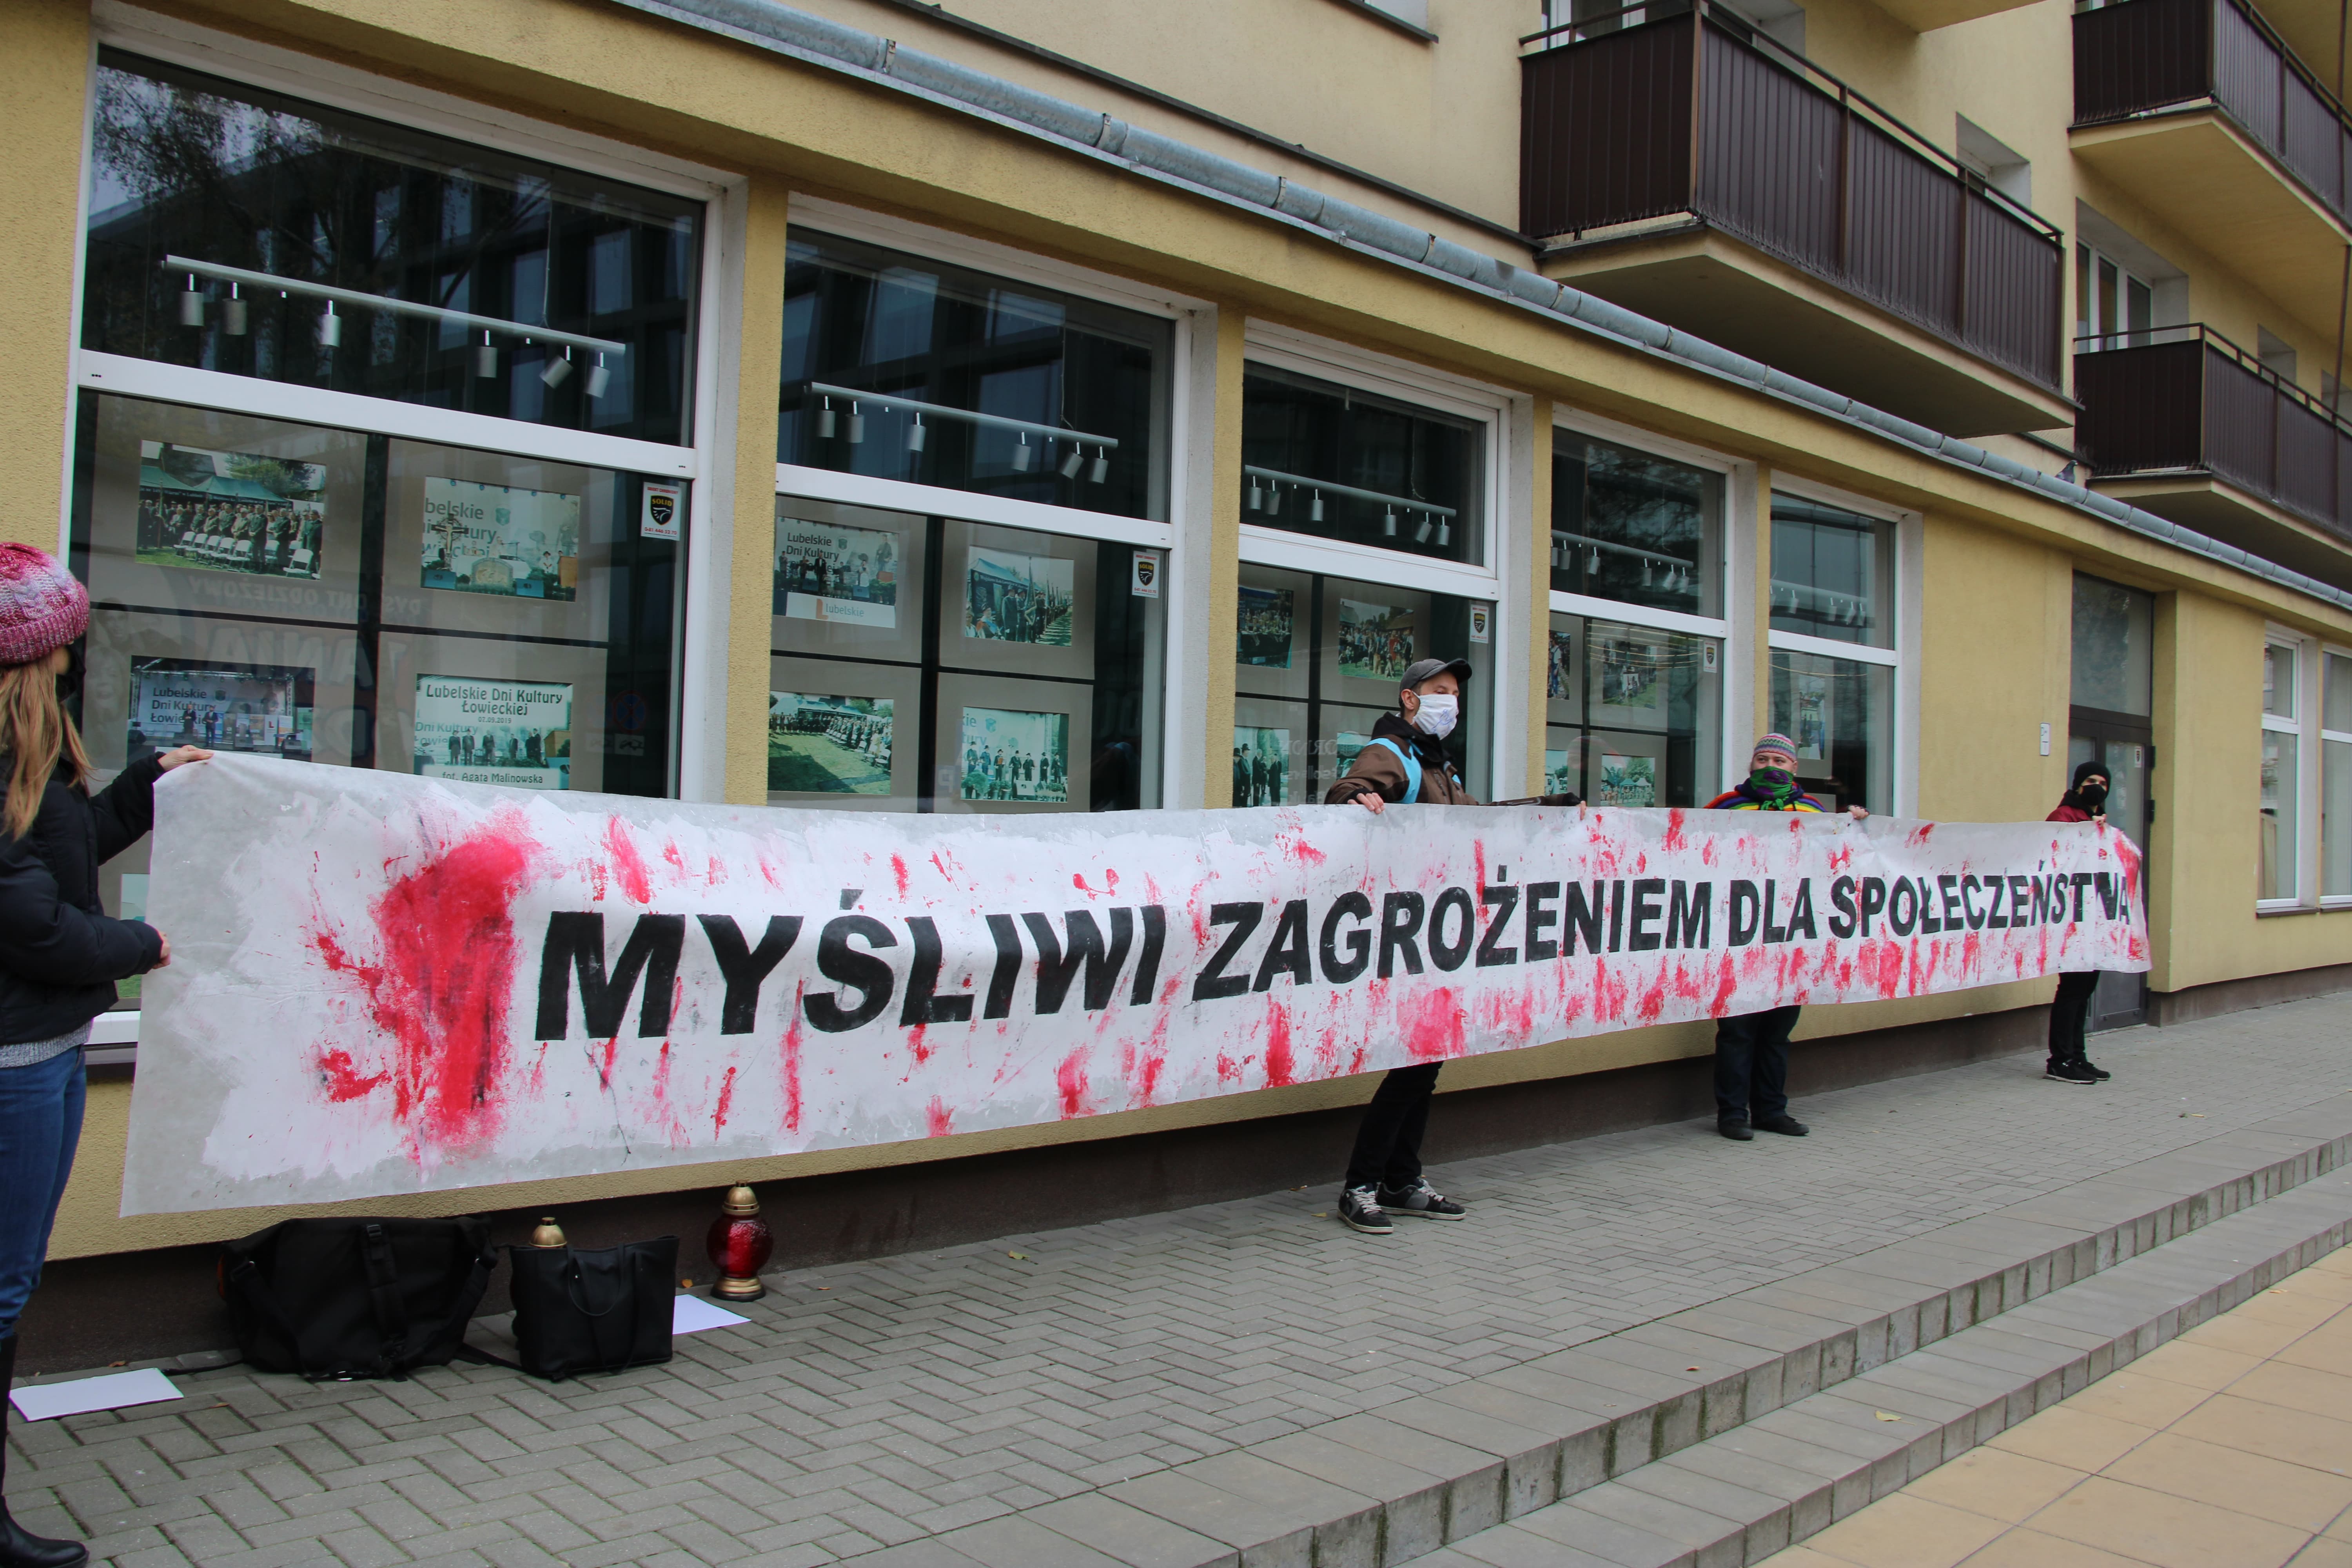 Demonstracja "Myśliwi zagrożeniem dla społeczeństwa" w Lublinie. Odpowiedź na zastrzelenie 16-latka przez myśliwego - Zdjęcie główne